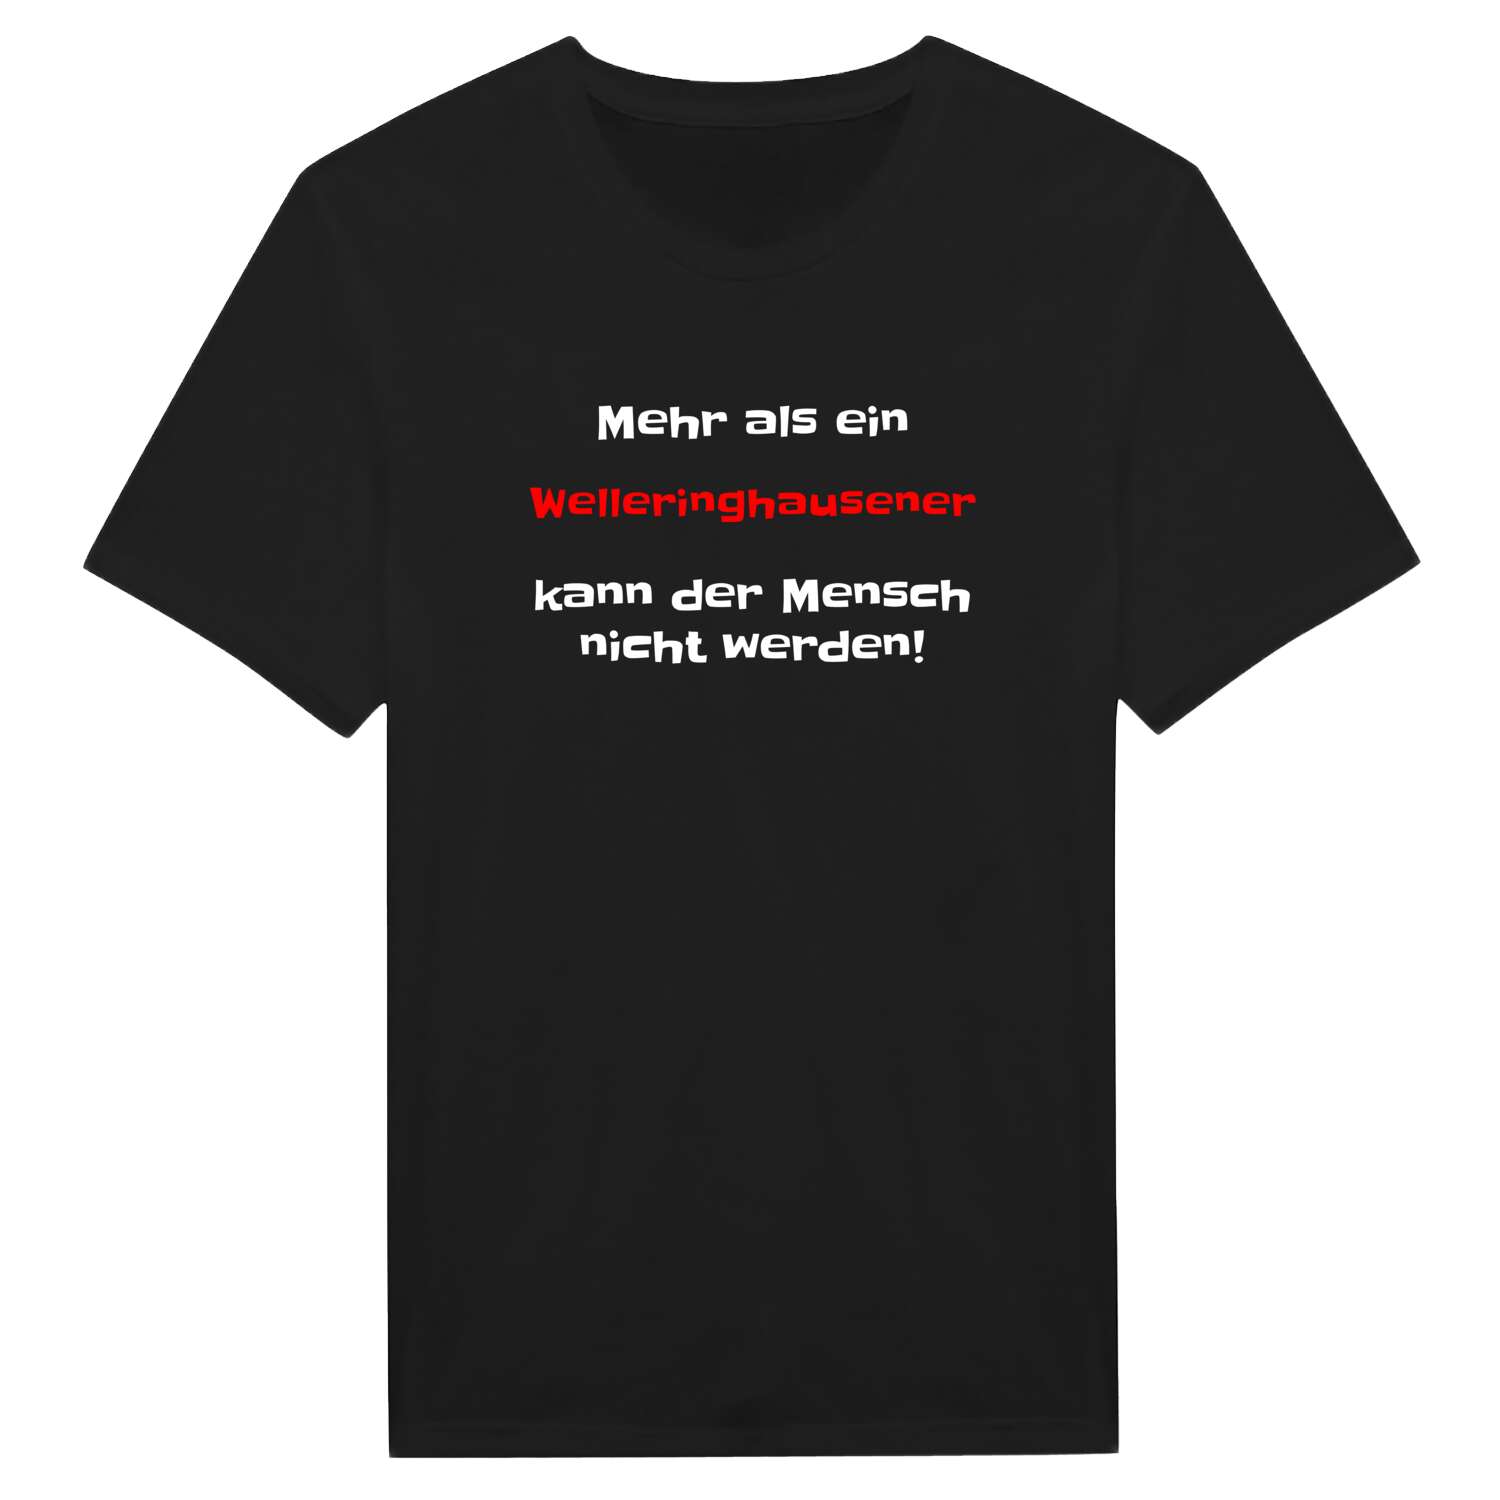 Welleringhausen T-Shirt »Mehr als ein«